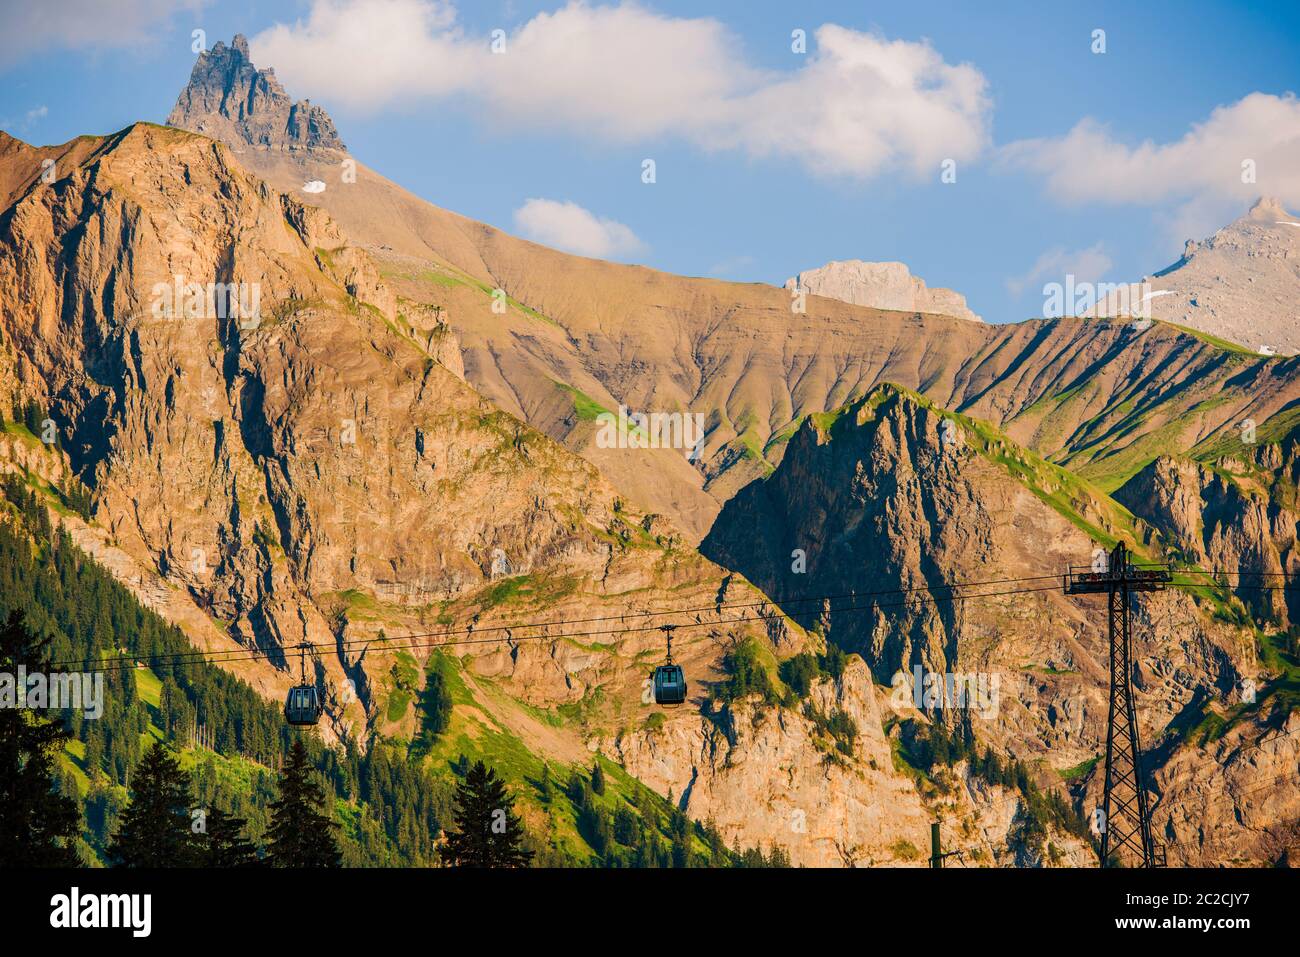 Adelboden Village in Switzerland Air Line Gondolas and the Alpine Landscape Stock Photo